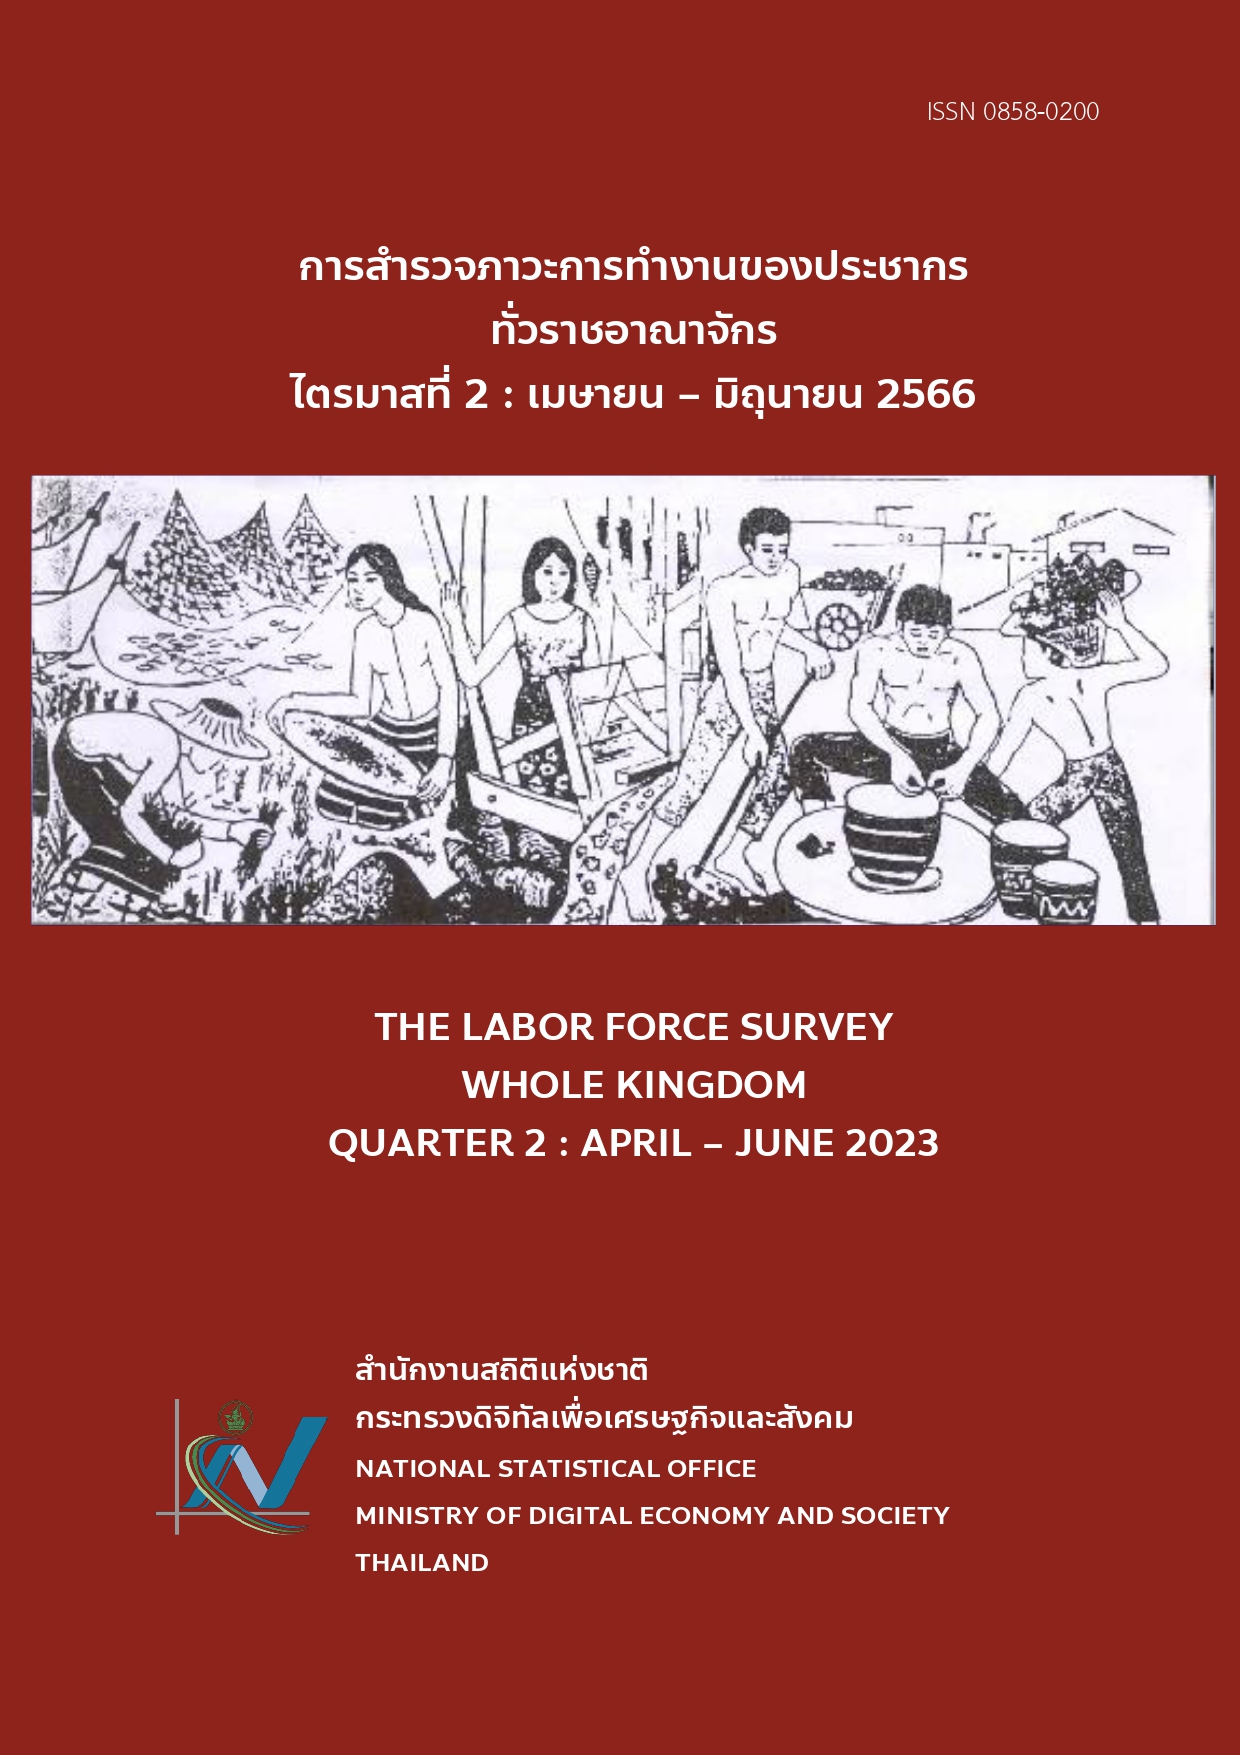 The Labor Force Survey Whole Kingdom 2023 Quarter 2